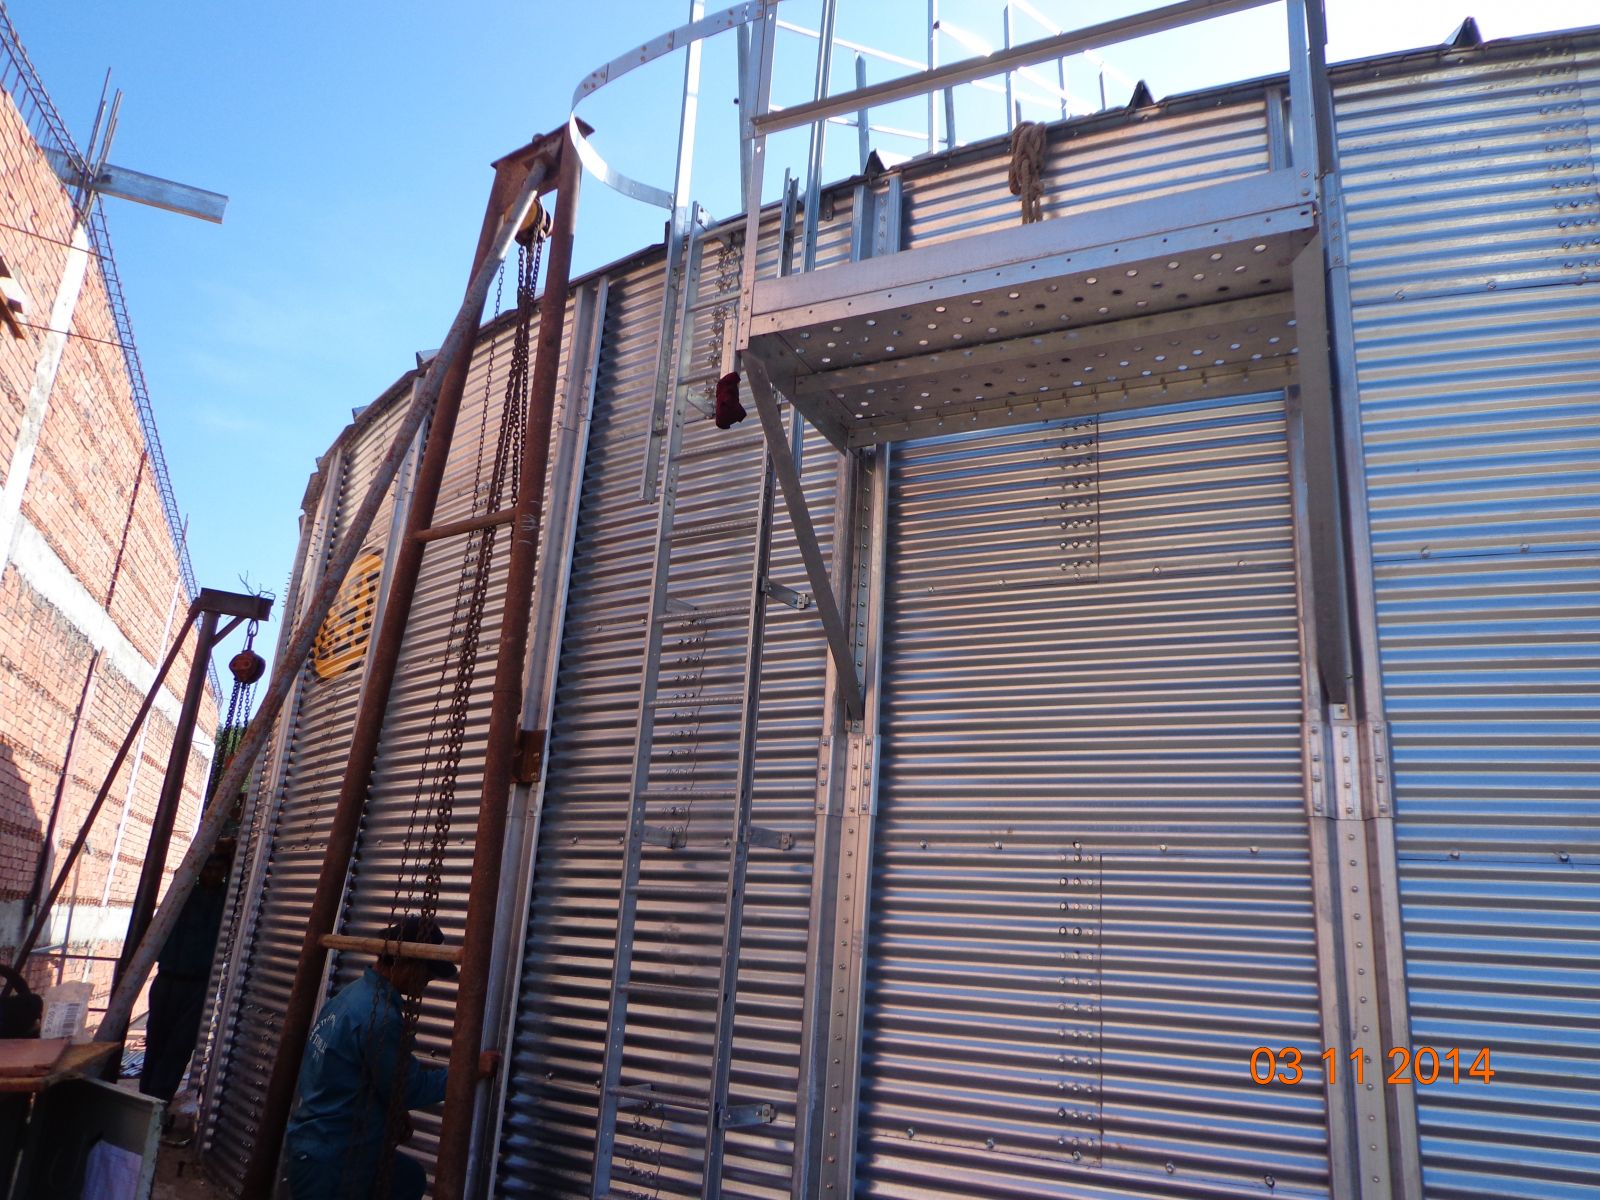 Lắp đặt silo chứa lúa, ngô - Nhà máy bột mì cty Inter Flour